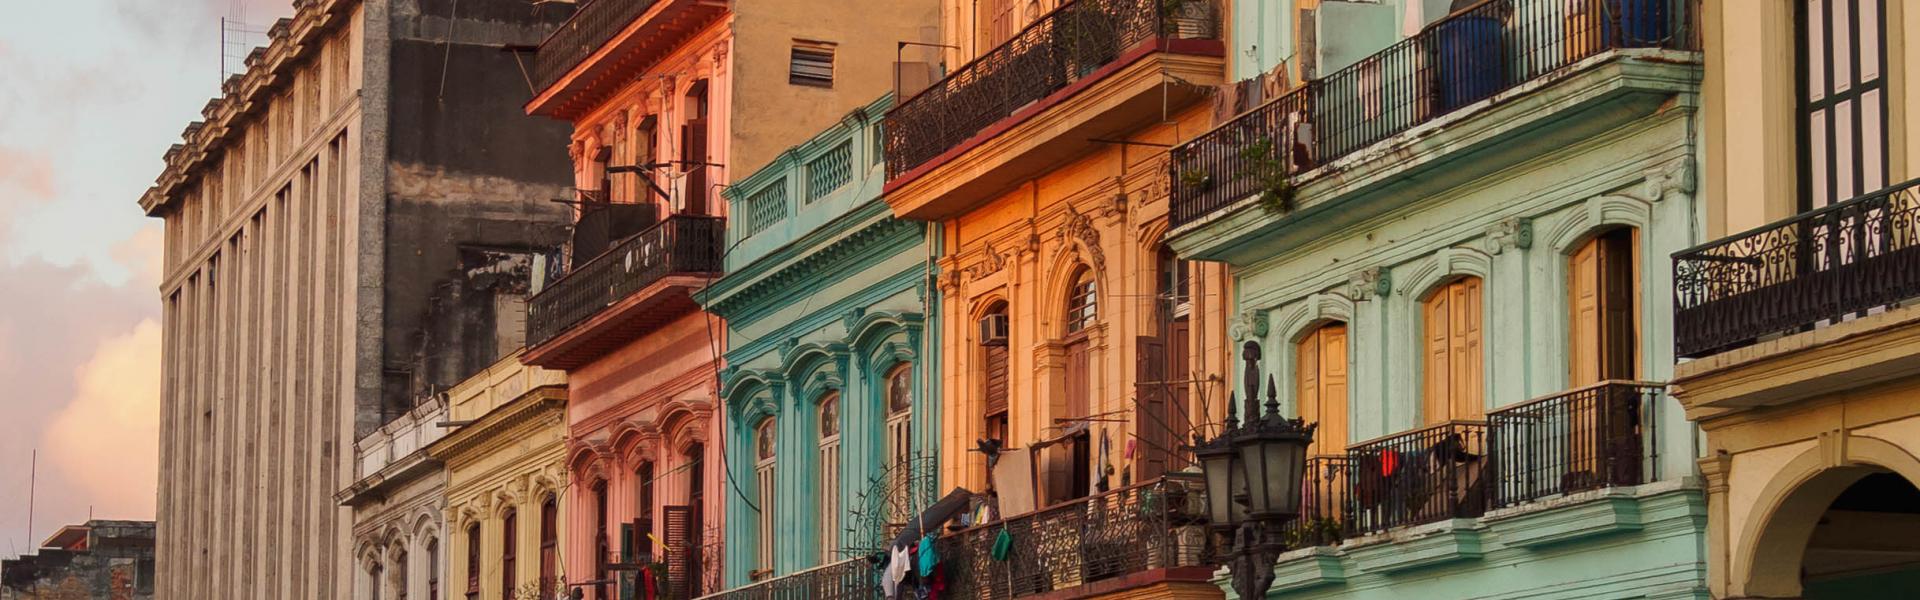 Vakantiehuizen en appartementen in Cuba - Wimdu